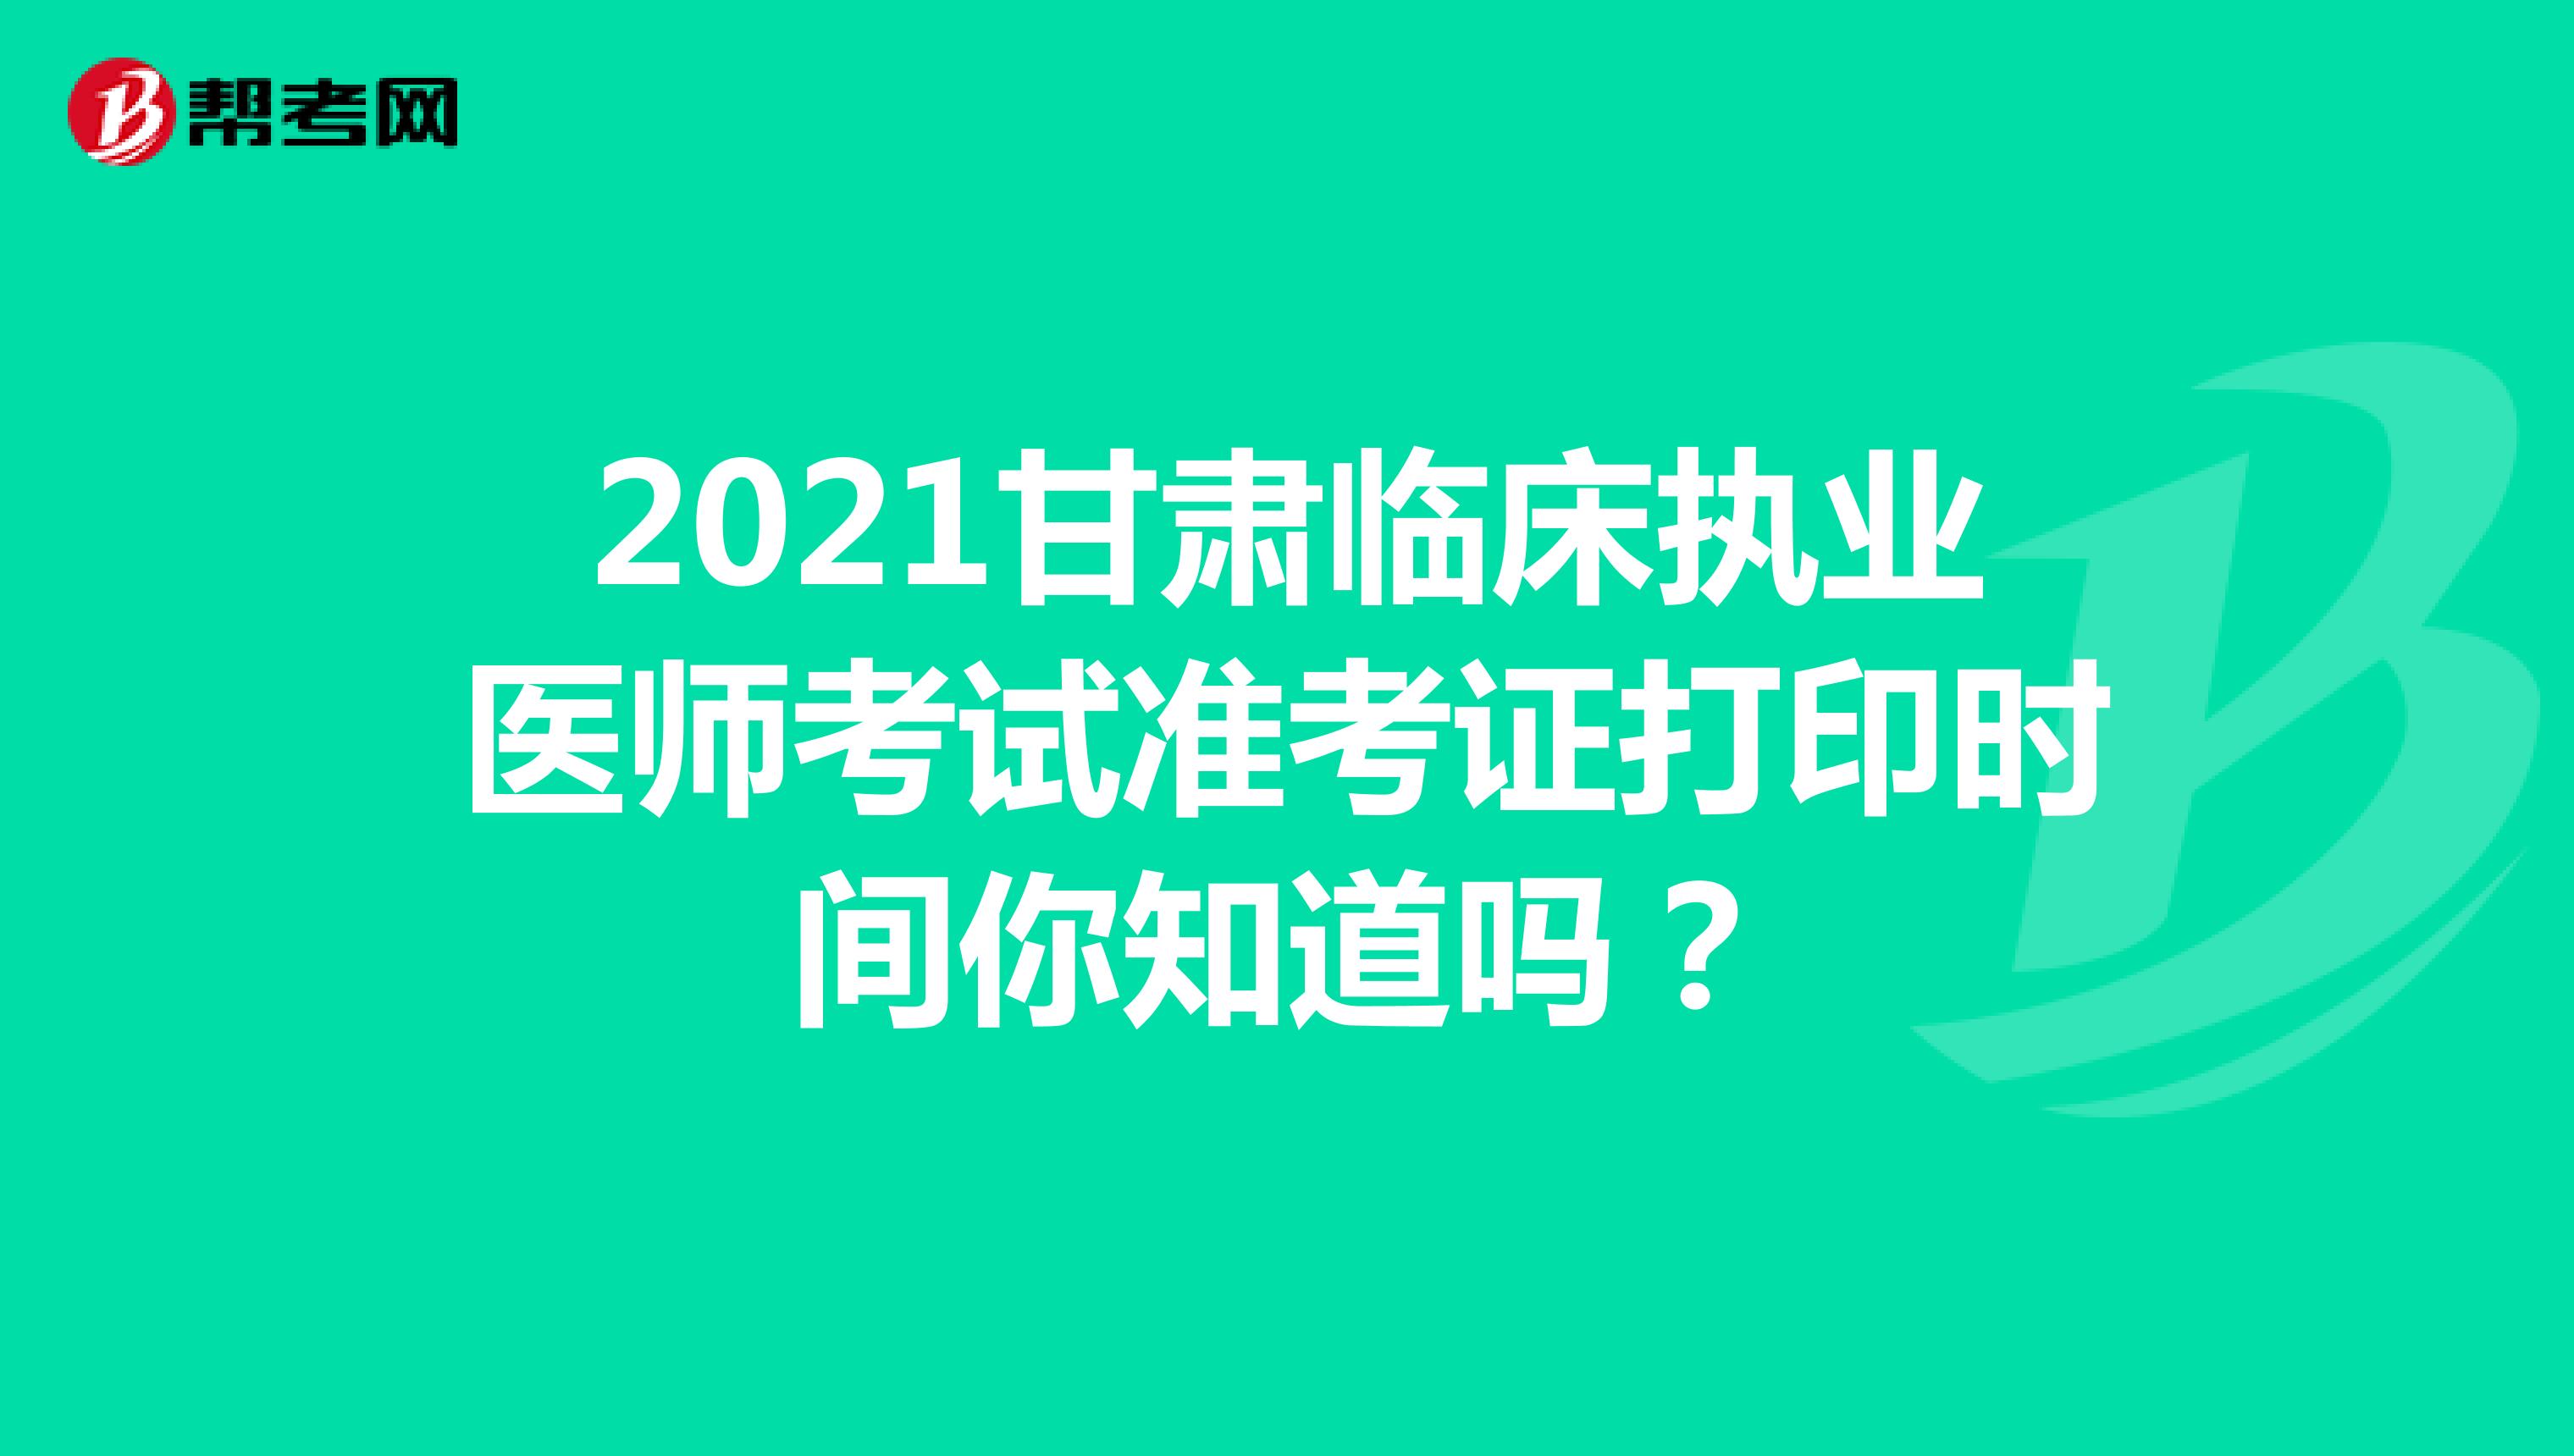 2021甘肃临床执业医师考试准考证打印时间你知道吗？